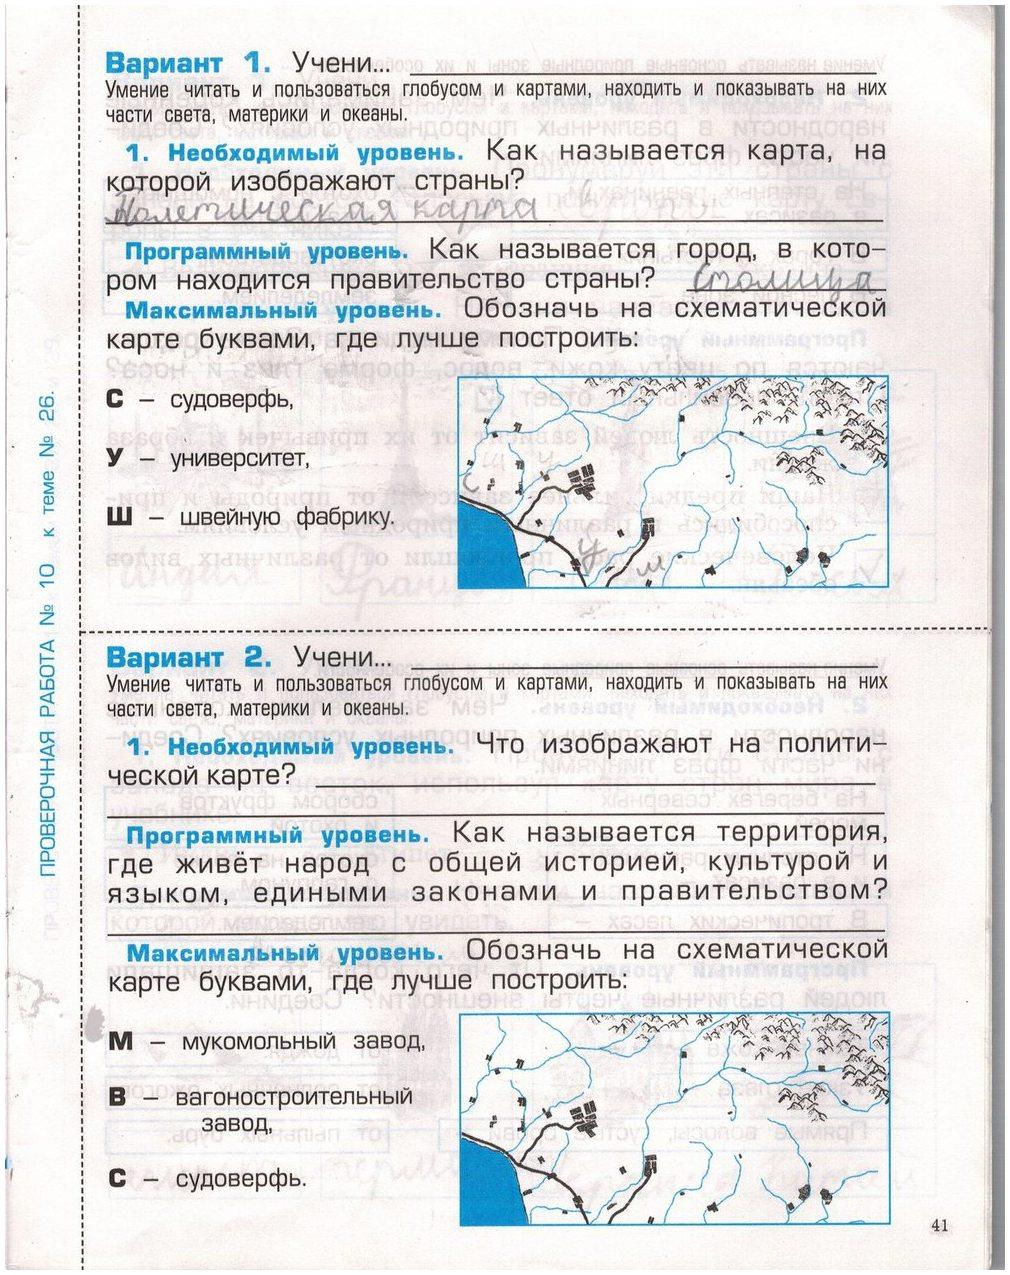 гдз 2 класс проверочные и контрольные работы страница 41 окружающий мир Вахрушев, Бурский, Родыгина